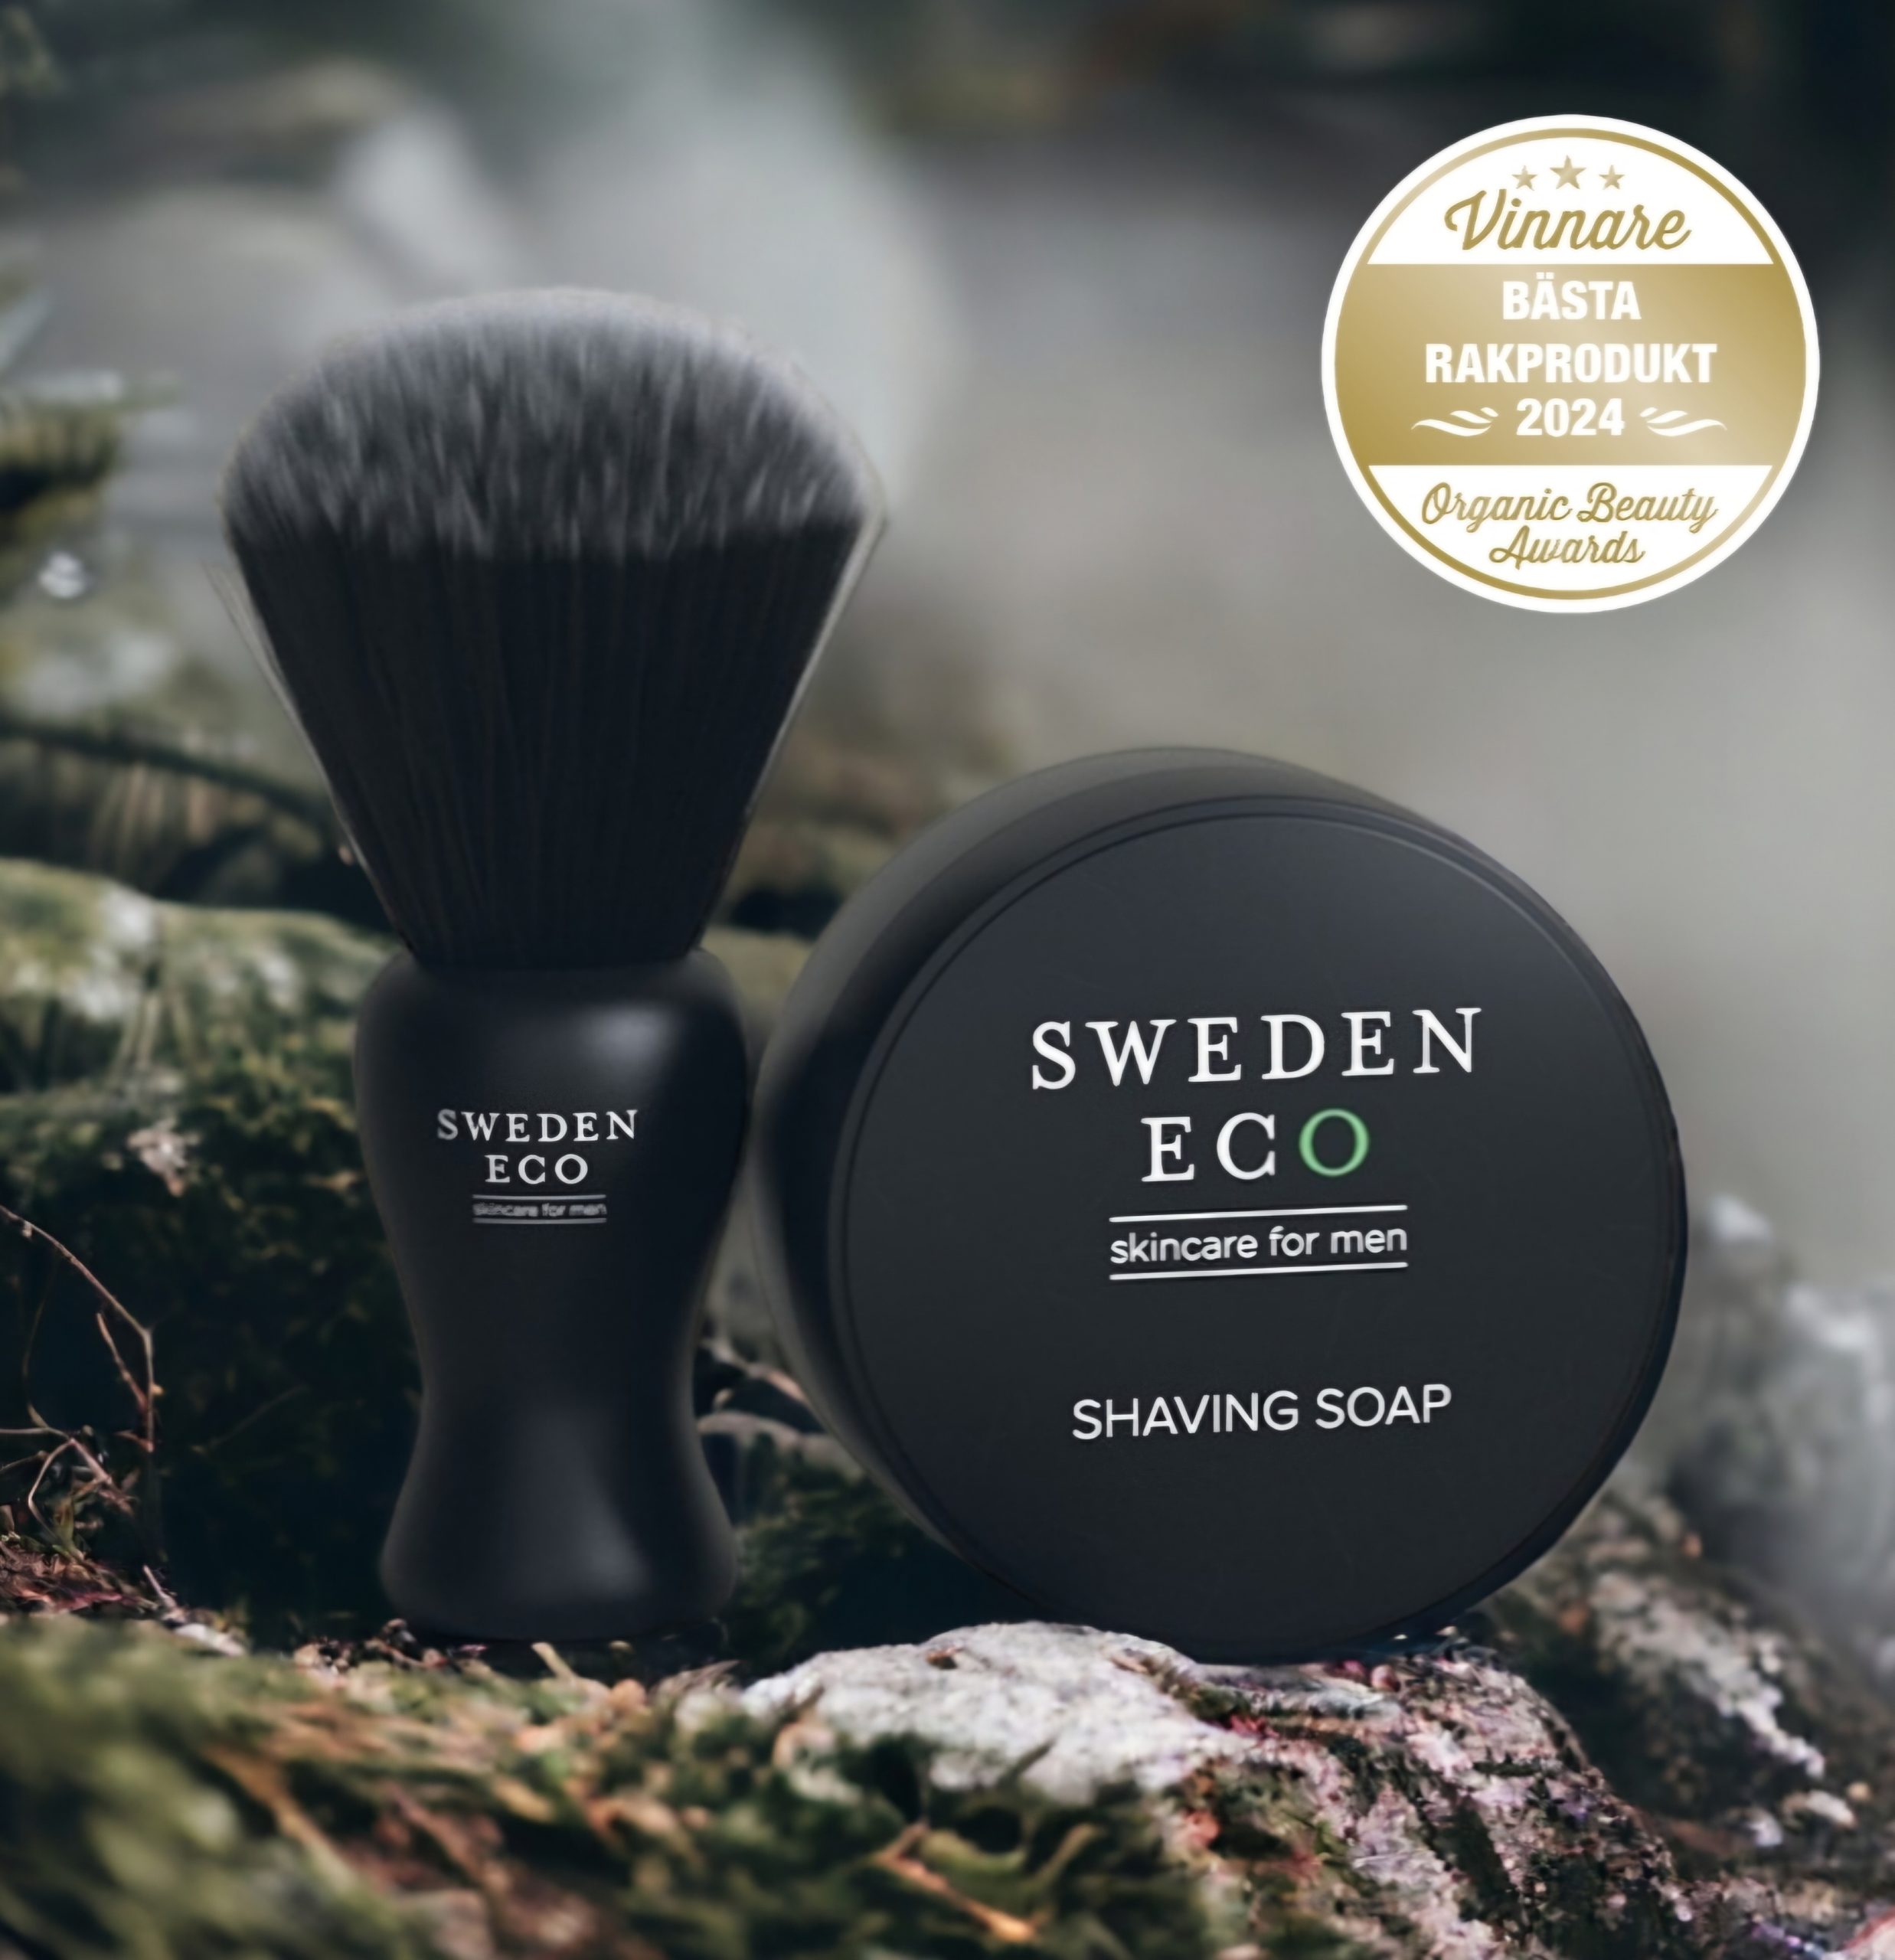 Shaving Soap Bästa Rakprodukt 2024 Organic Beauty Awards